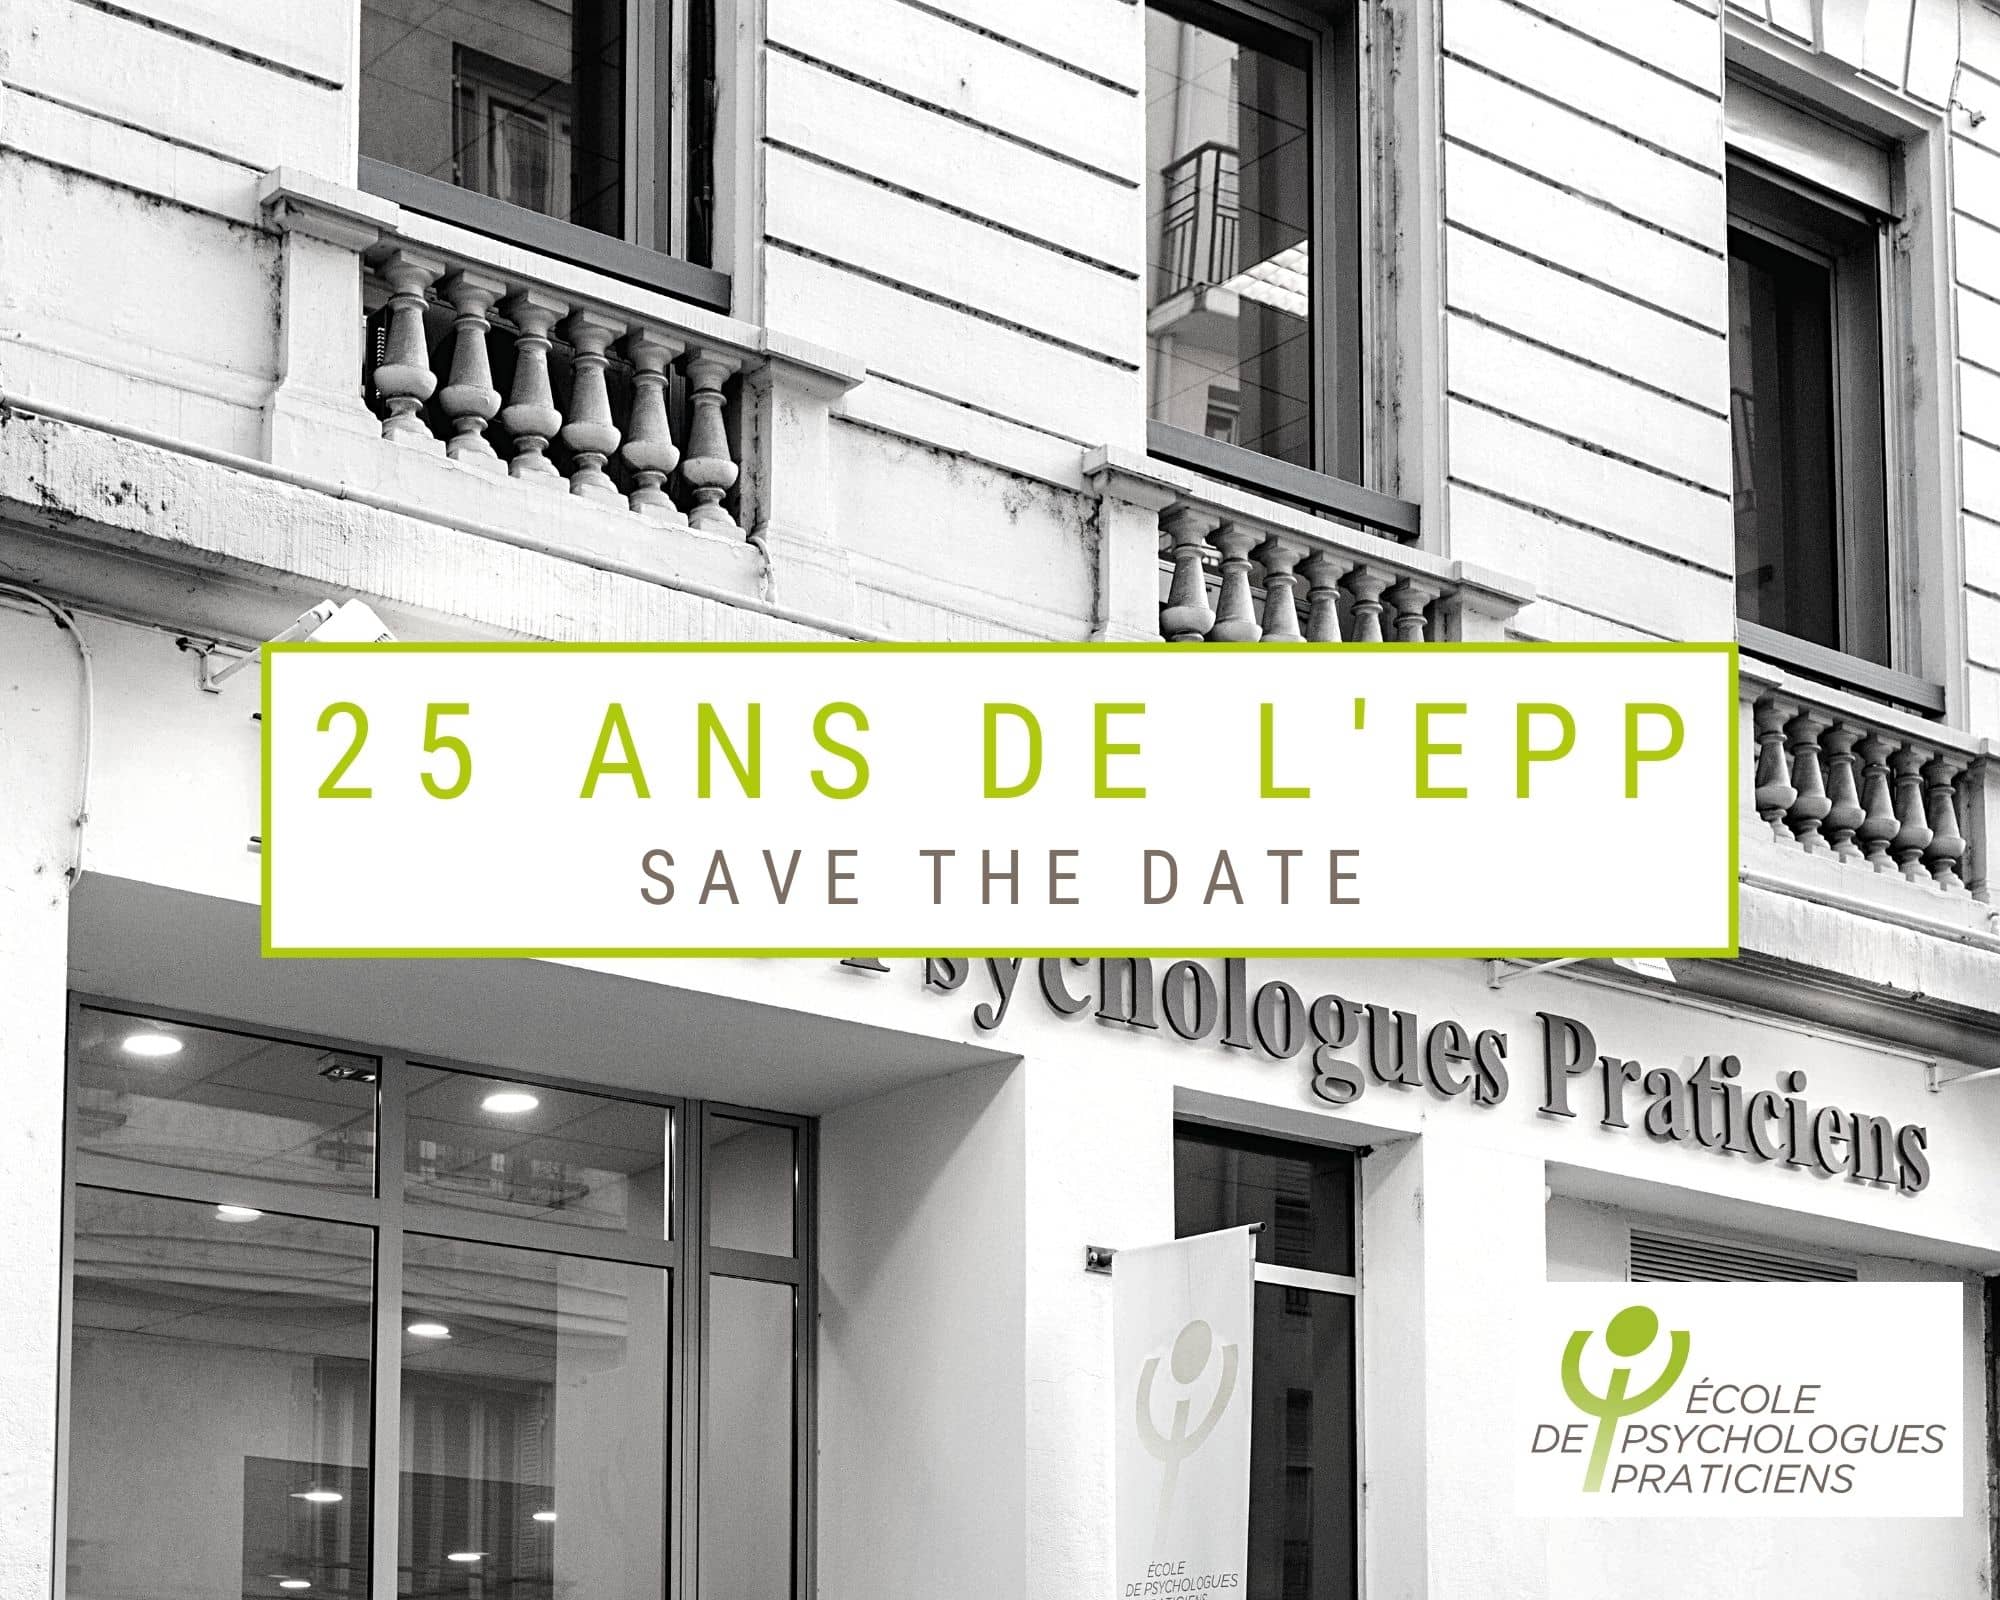 25 ans de lEPP Lyon Evenements Ecole de Psychologues Praticiens et portes ouvertes ecoles psychologues